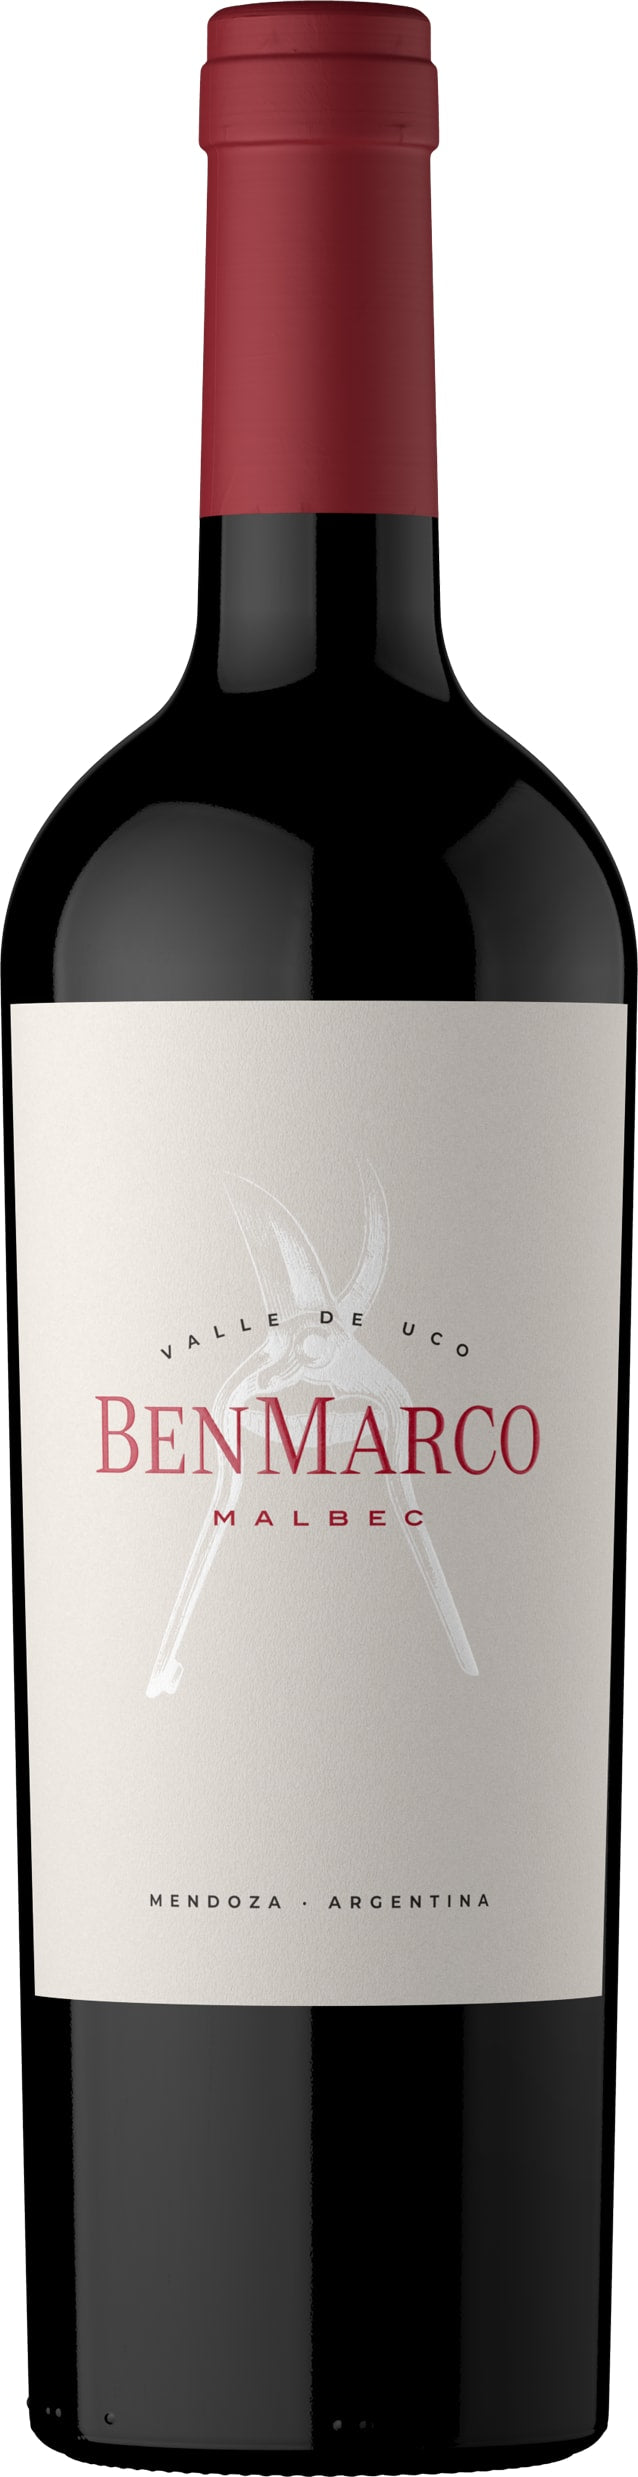 Susana Balbo BenMarco Malbec 2021 75cl - Buy Susana Balbo Wines from GREAT WINES DIRECT wine shop